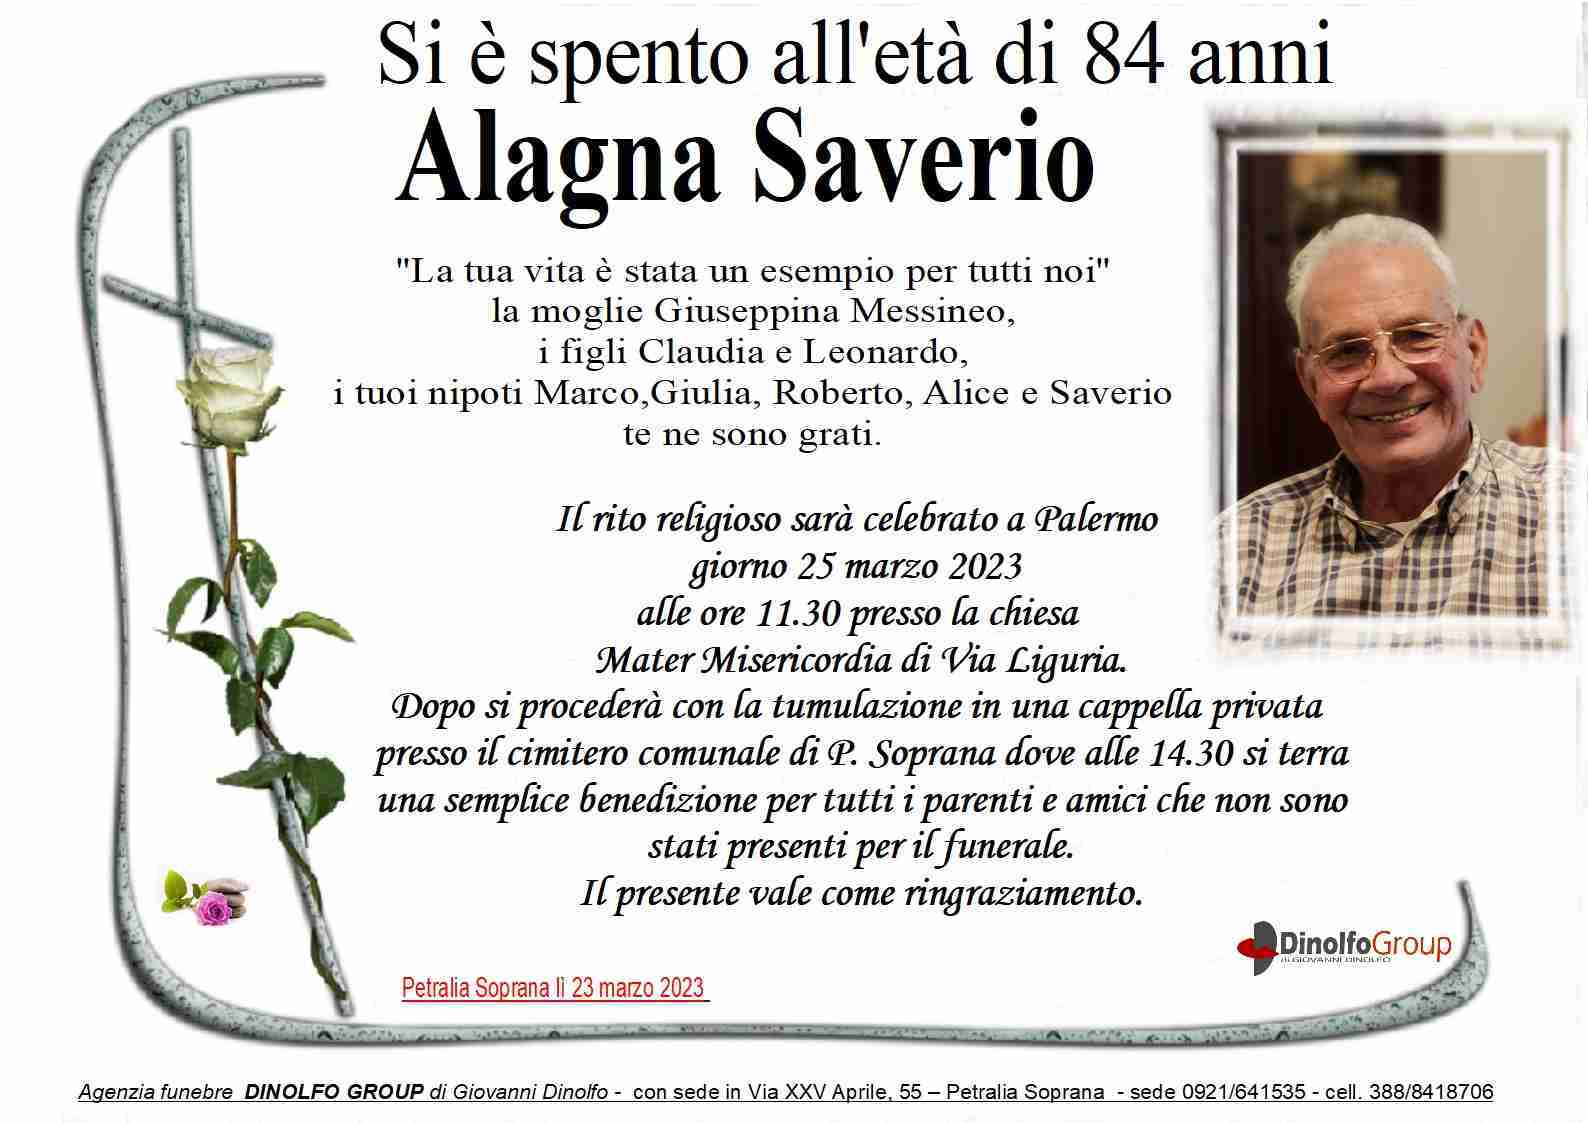 Saverio Alagna